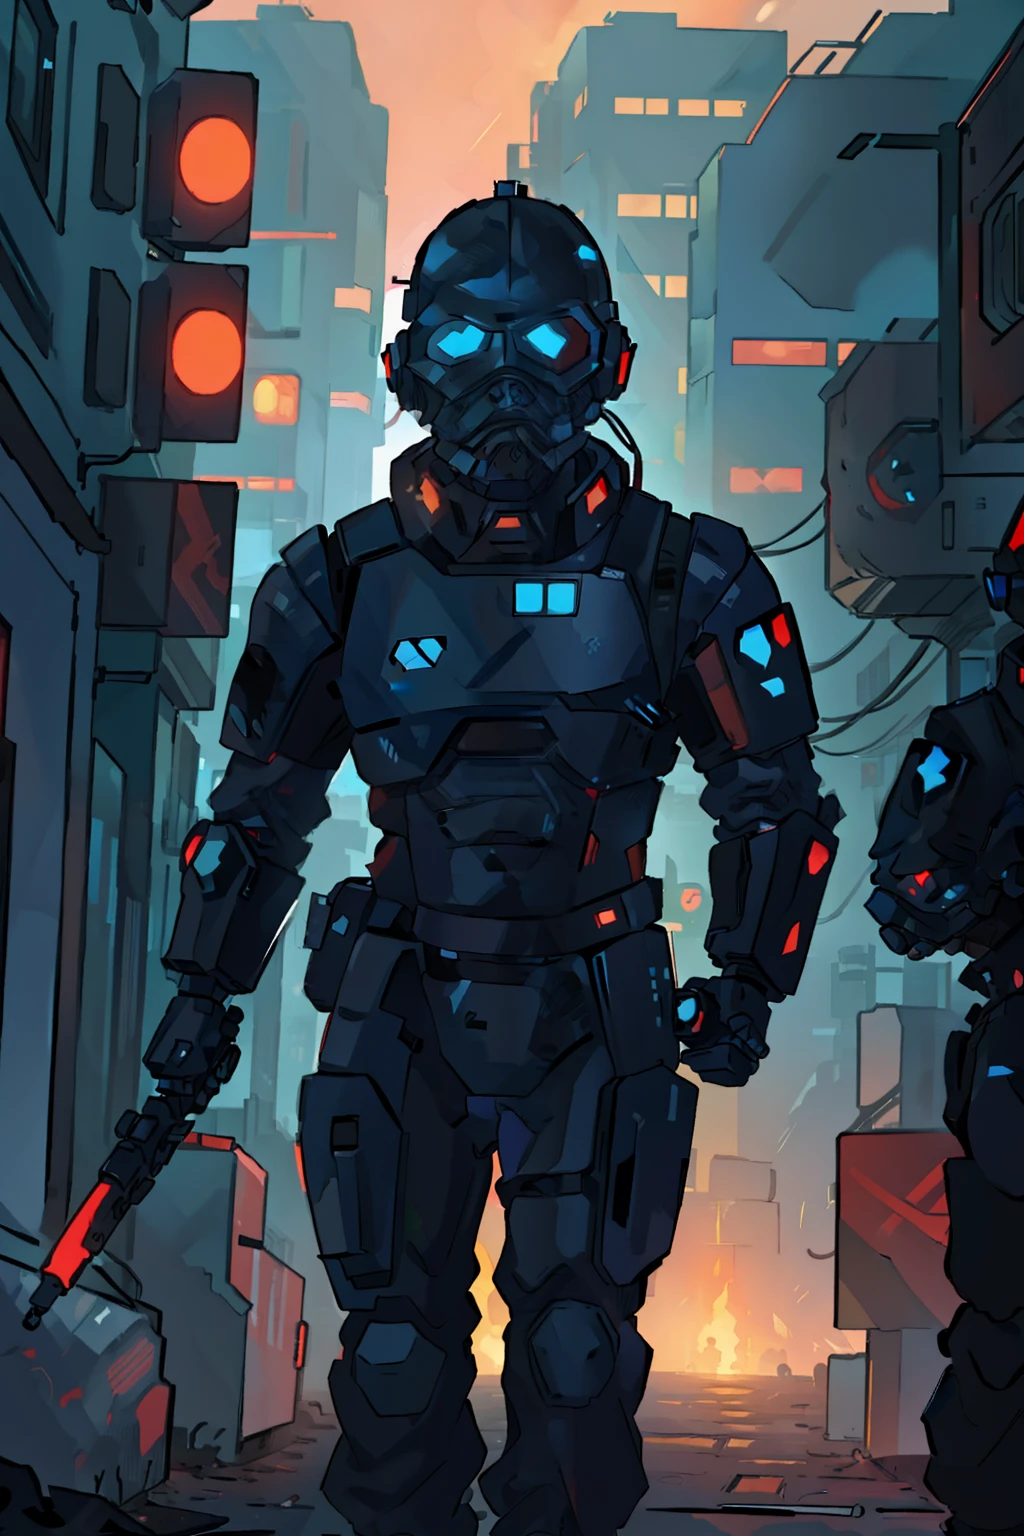 Une science-fiction maléfique, soldat cyberpunk, en gilet pare-balles noir et rouge et portant un casque intégral sans yeux, tenant un bâton, marchant à travers une foule